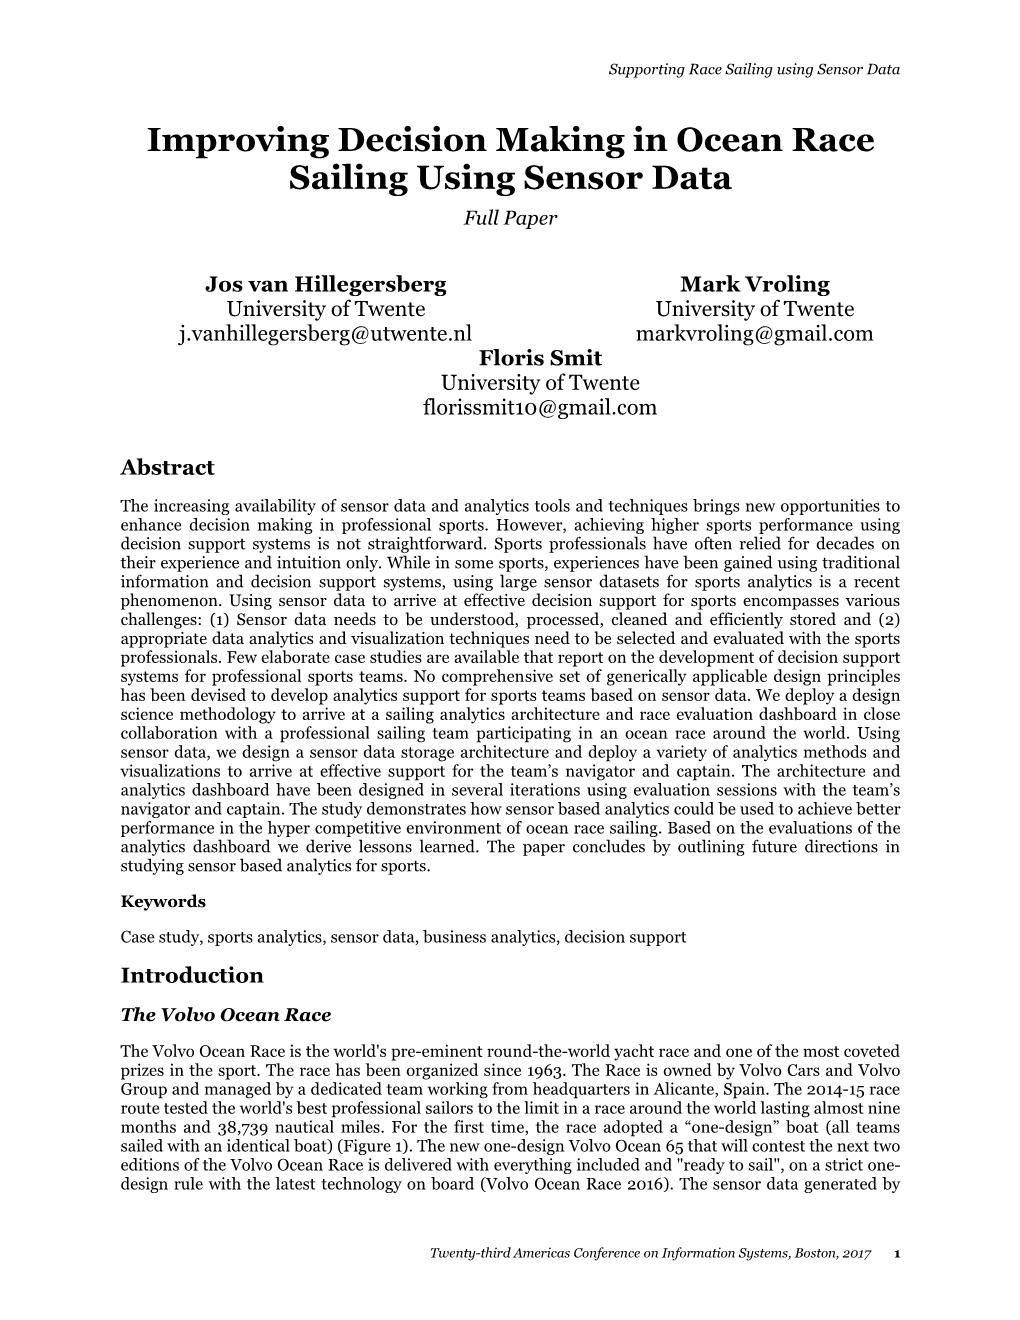 Improving Decision Making in Ocean Race Sailing Using Sensor Data Full Paper